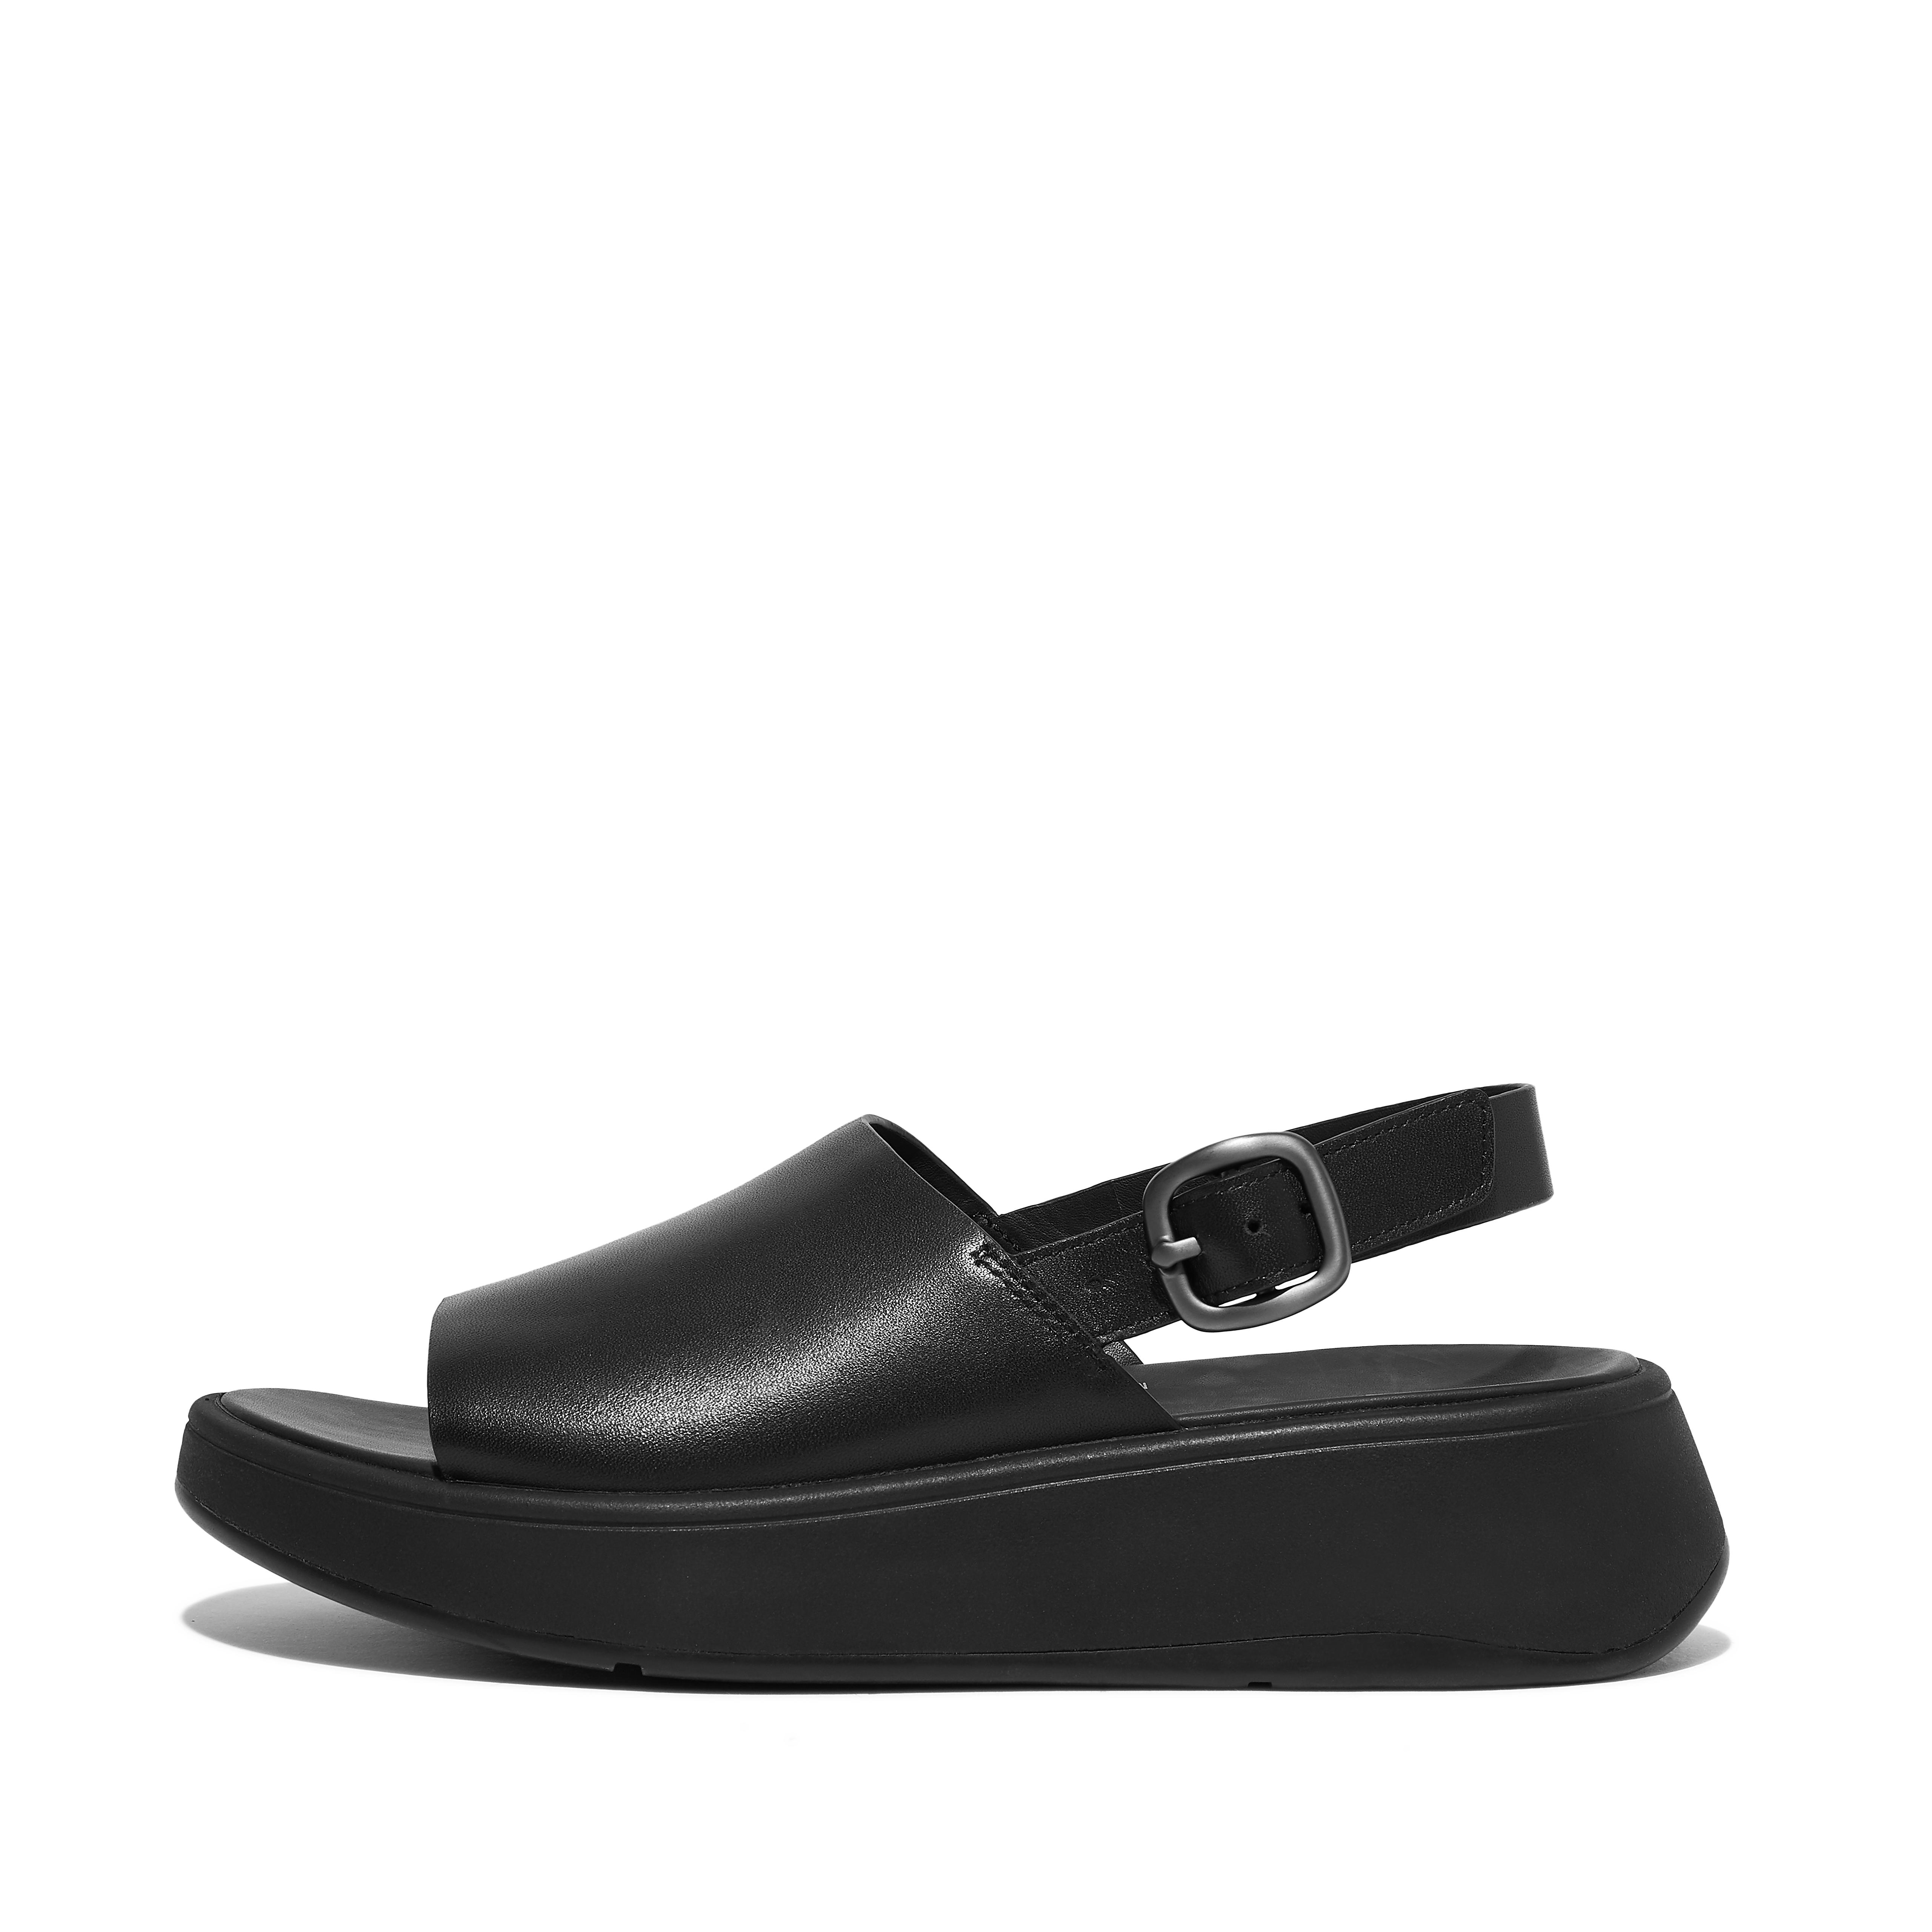 핏플랍 샌들 Fitflop Leather Flatform Back-Strap Sandals,All Black